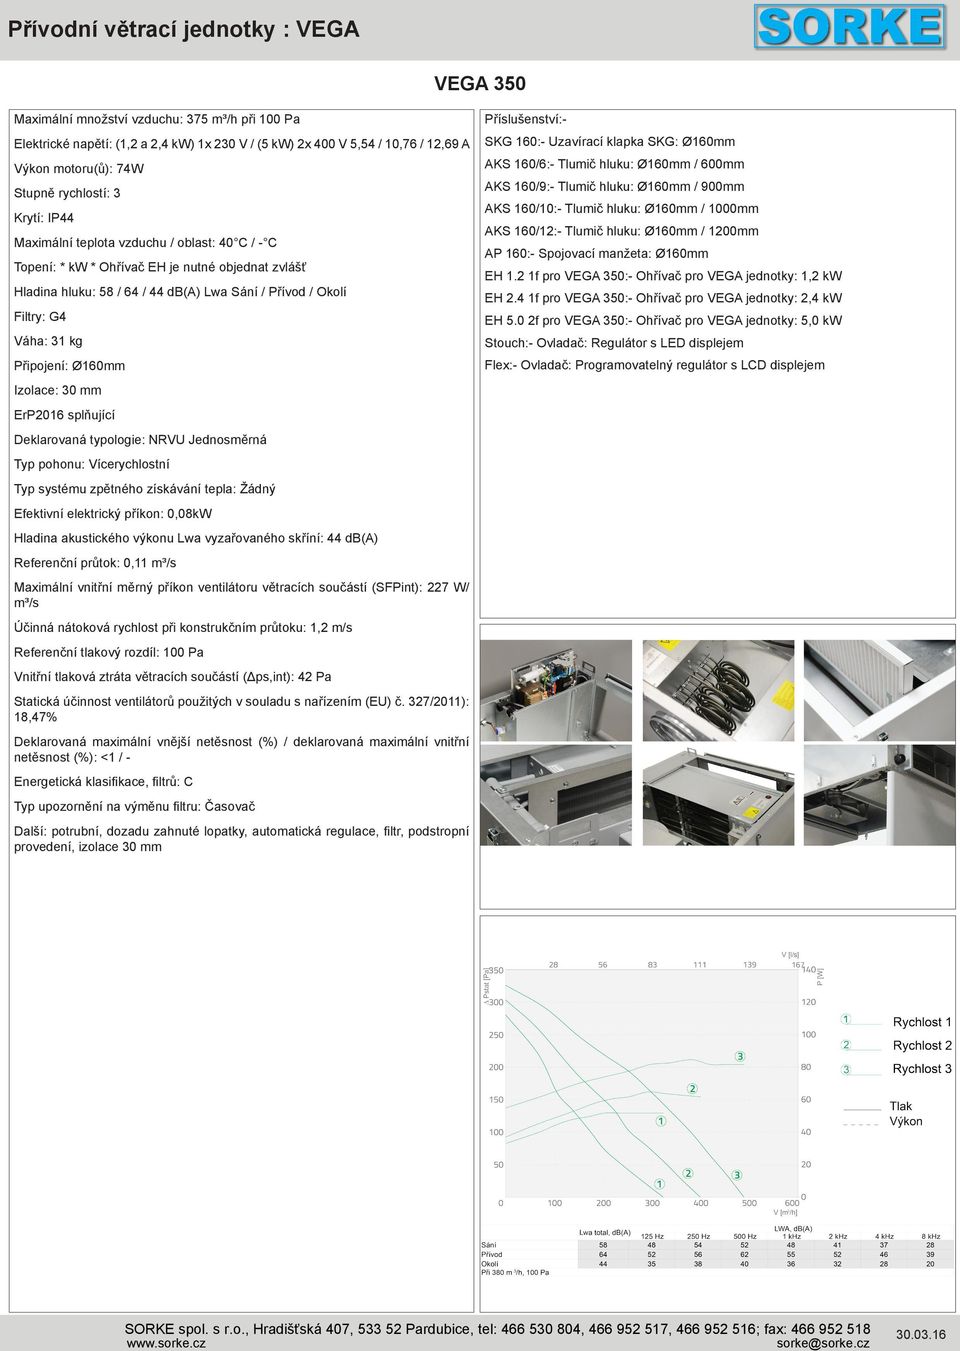 Izolace: 30 mm ErP2016 splňující Deklarovaná typologie: NRVU Jednosměrná Typ pohonu: Vícerychlostní Typ systému zpětného získávání tepla: Žádný Efektivní elektrický příkon: 0,08kW Hladina akustického